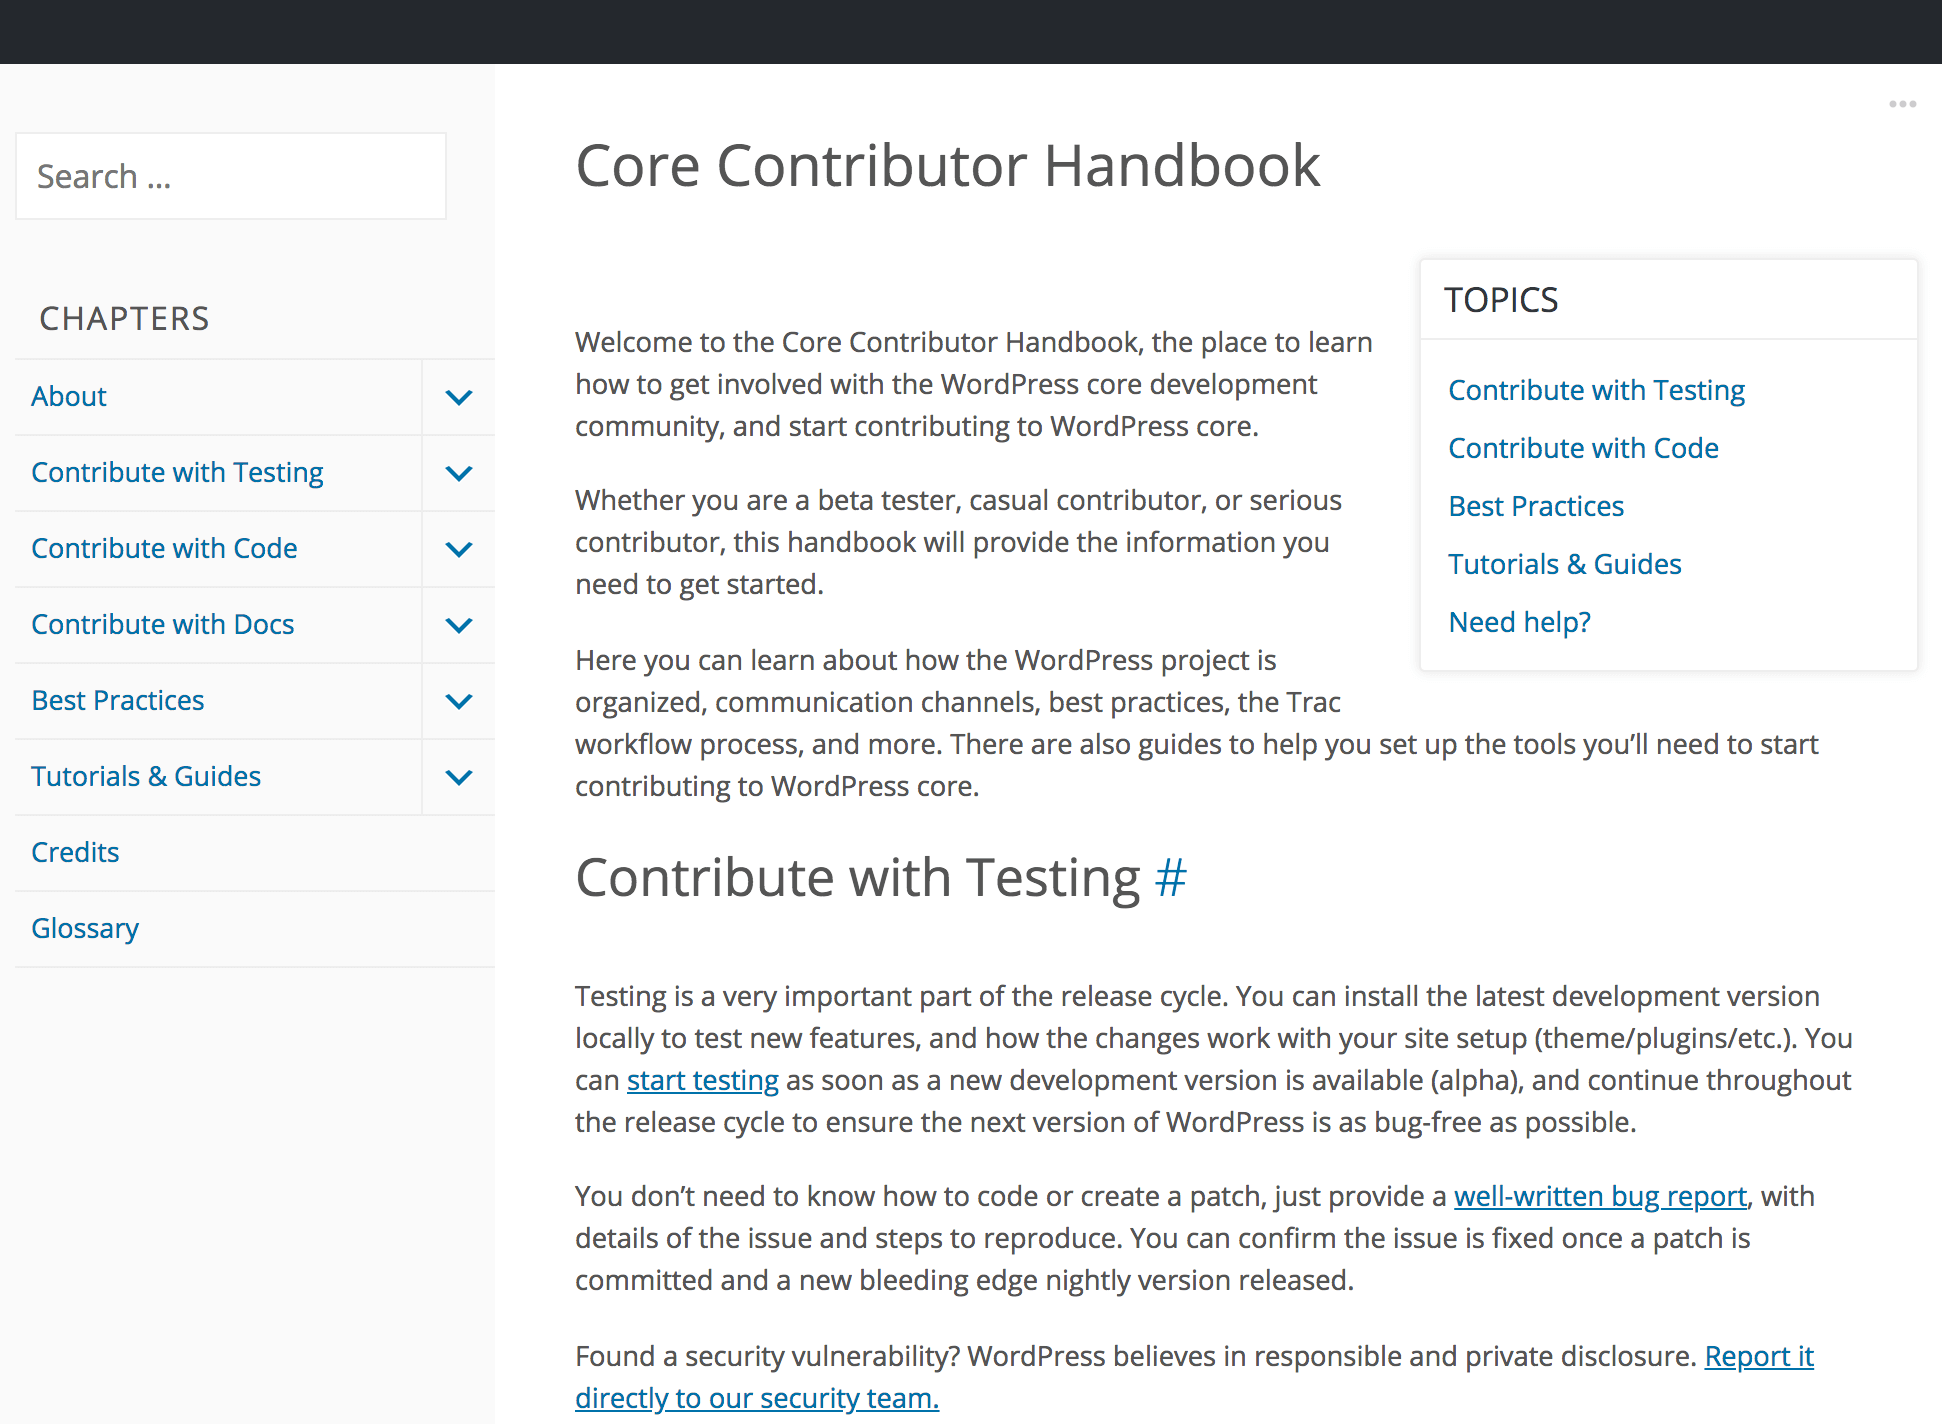 The Core Contributor Handbook website.